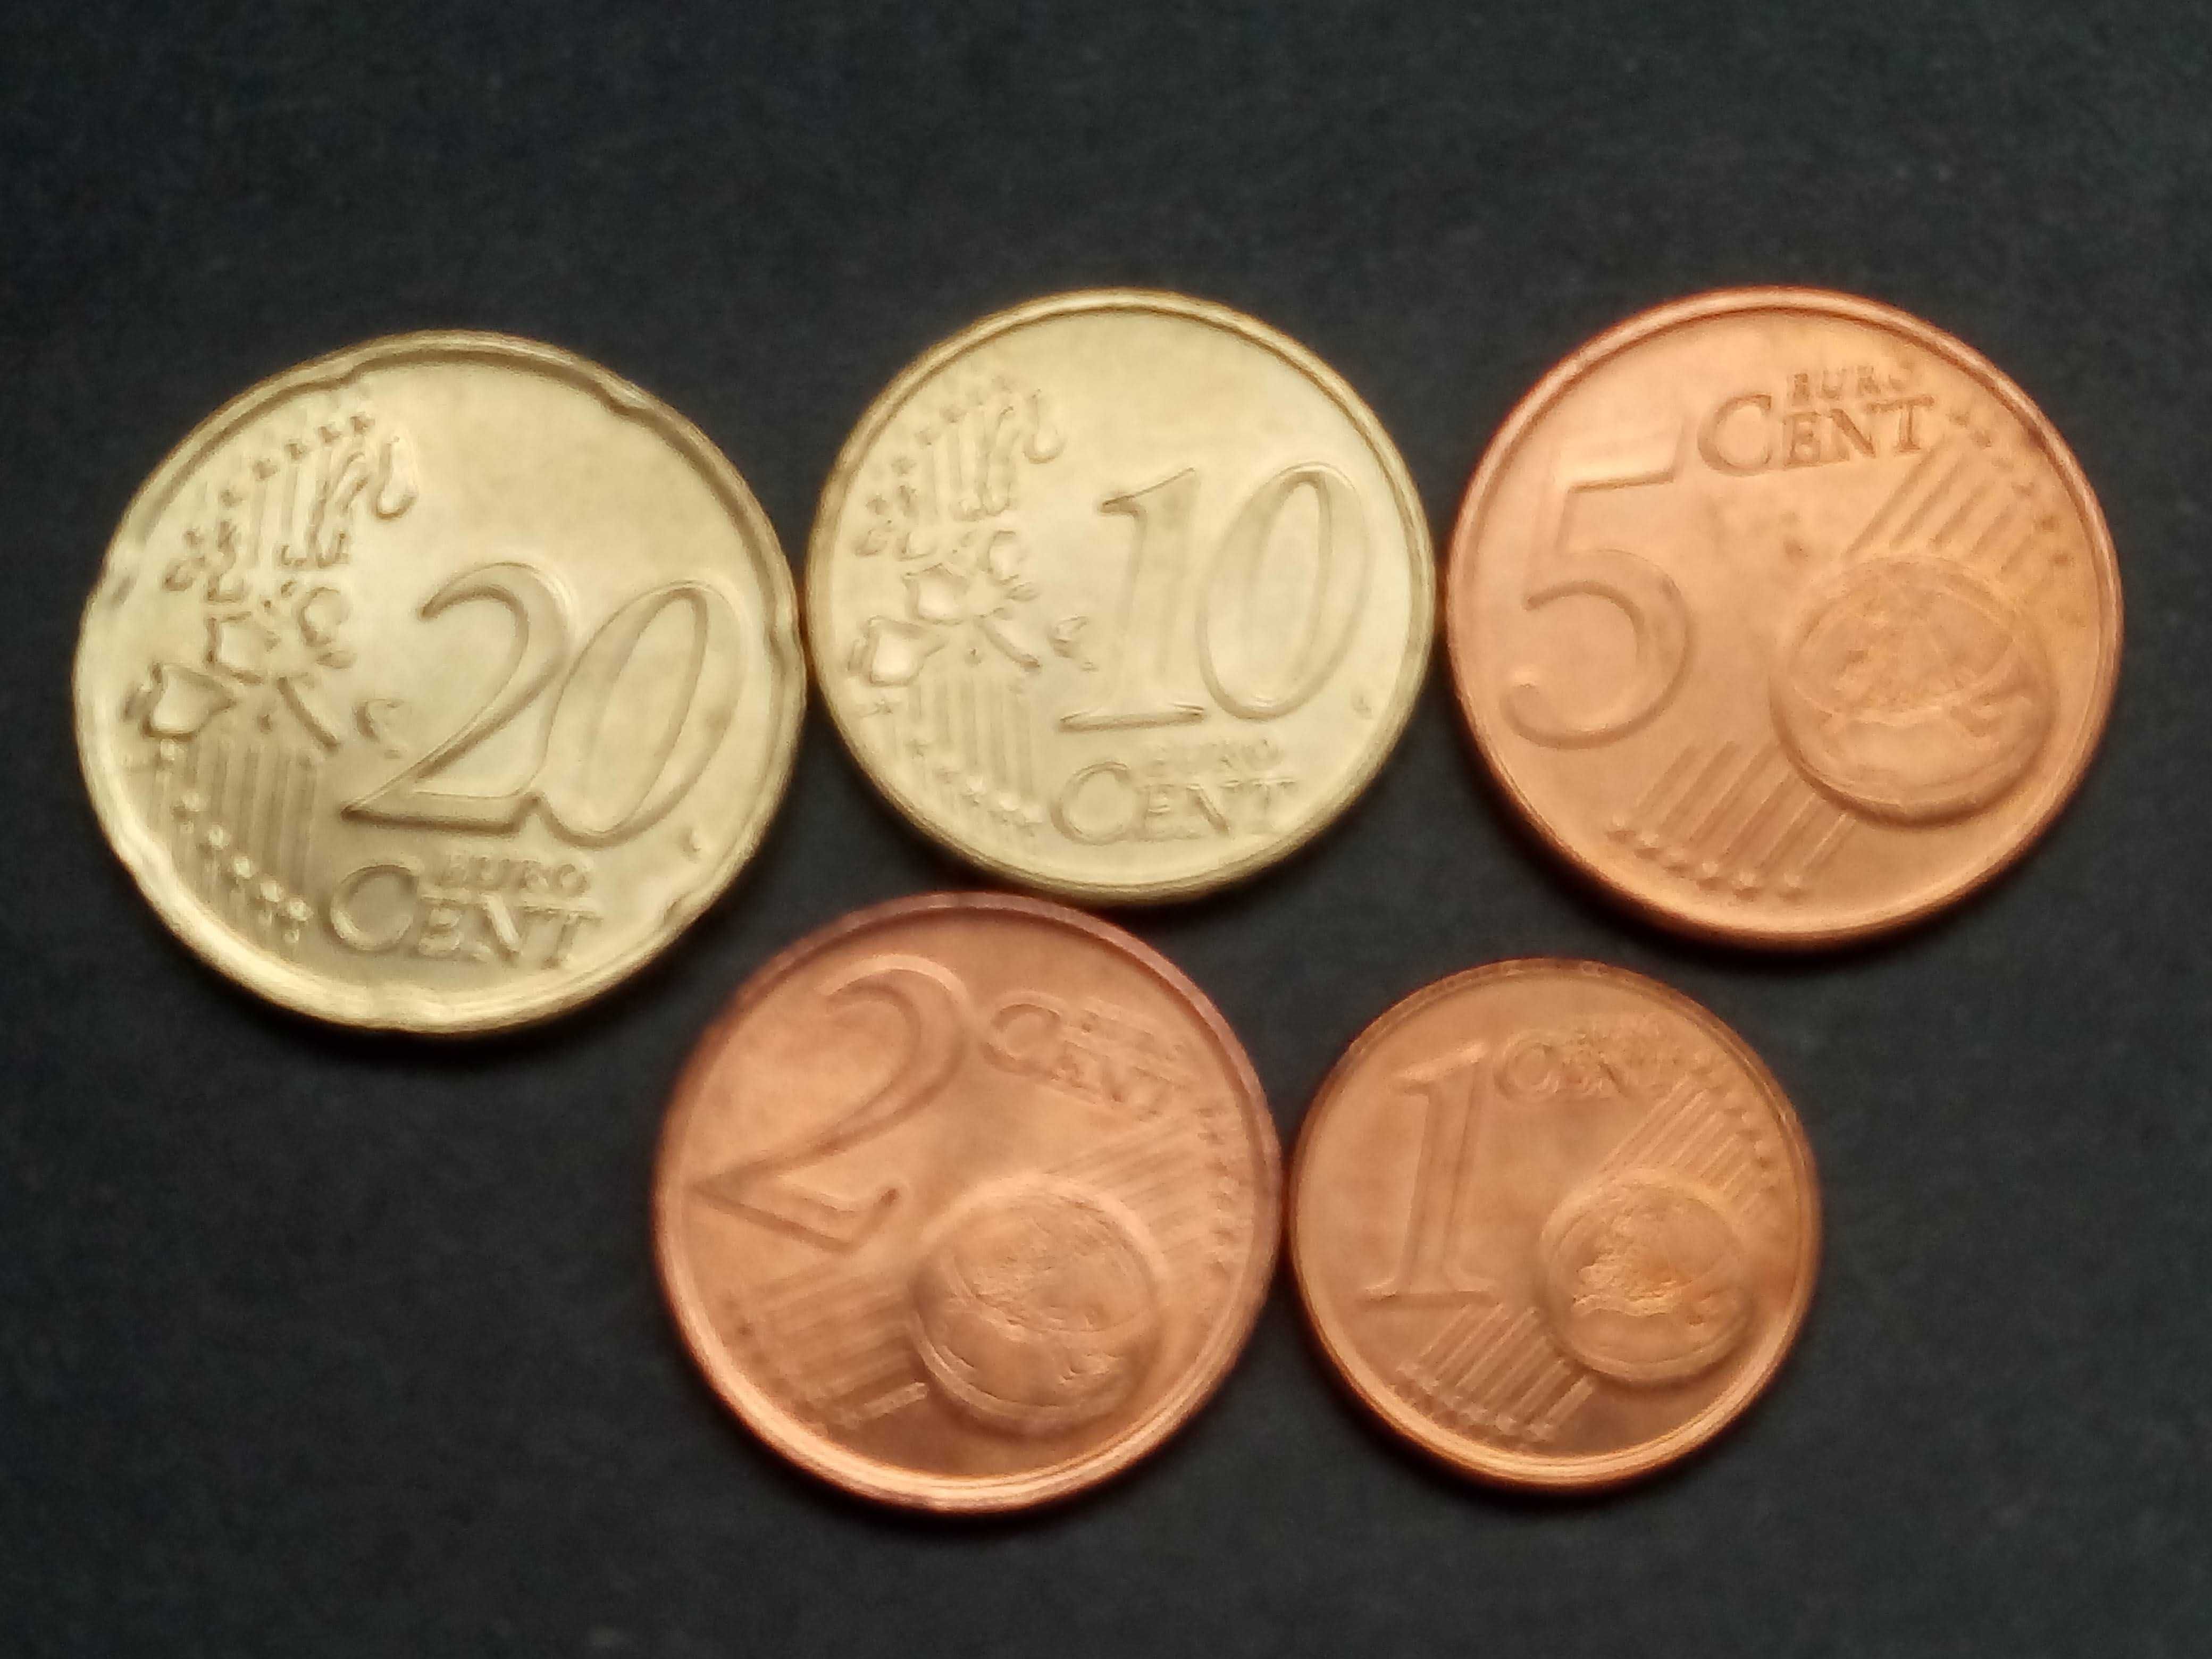 coleçâo completa de 8 moedas de Euros 2002 da Grécia novo preço